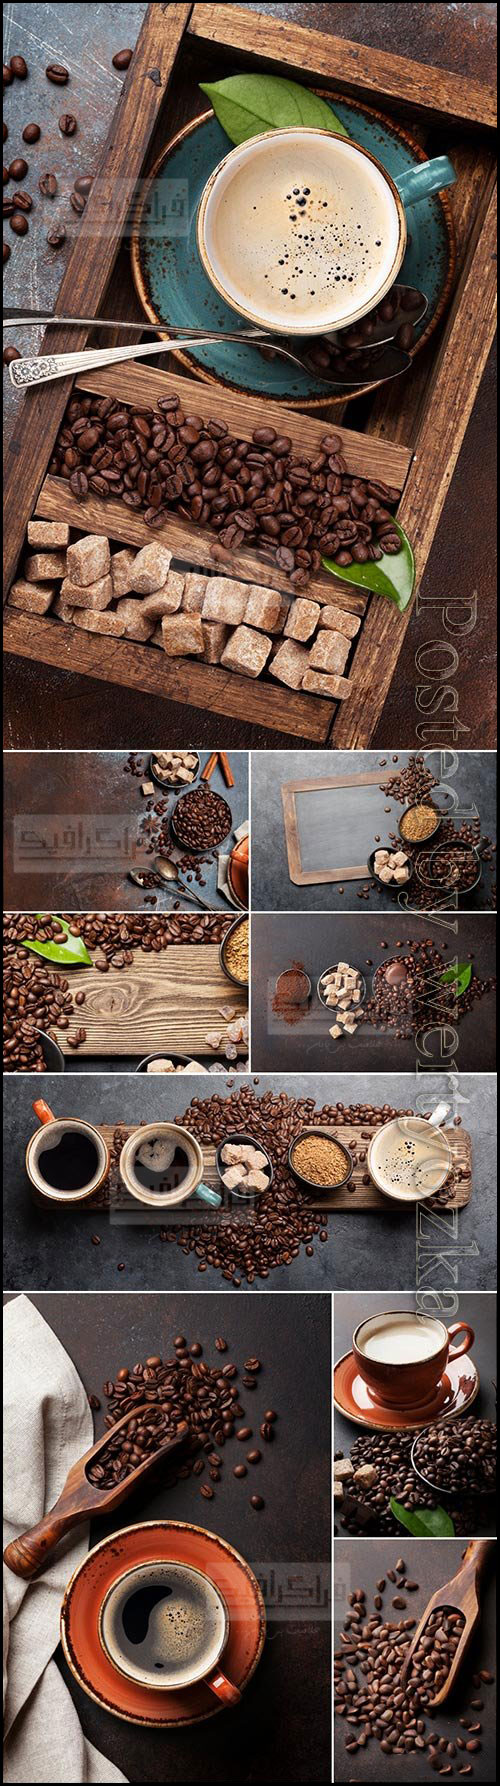 تصاویر استوک قهوه و فنجان قهوه - شماره 3